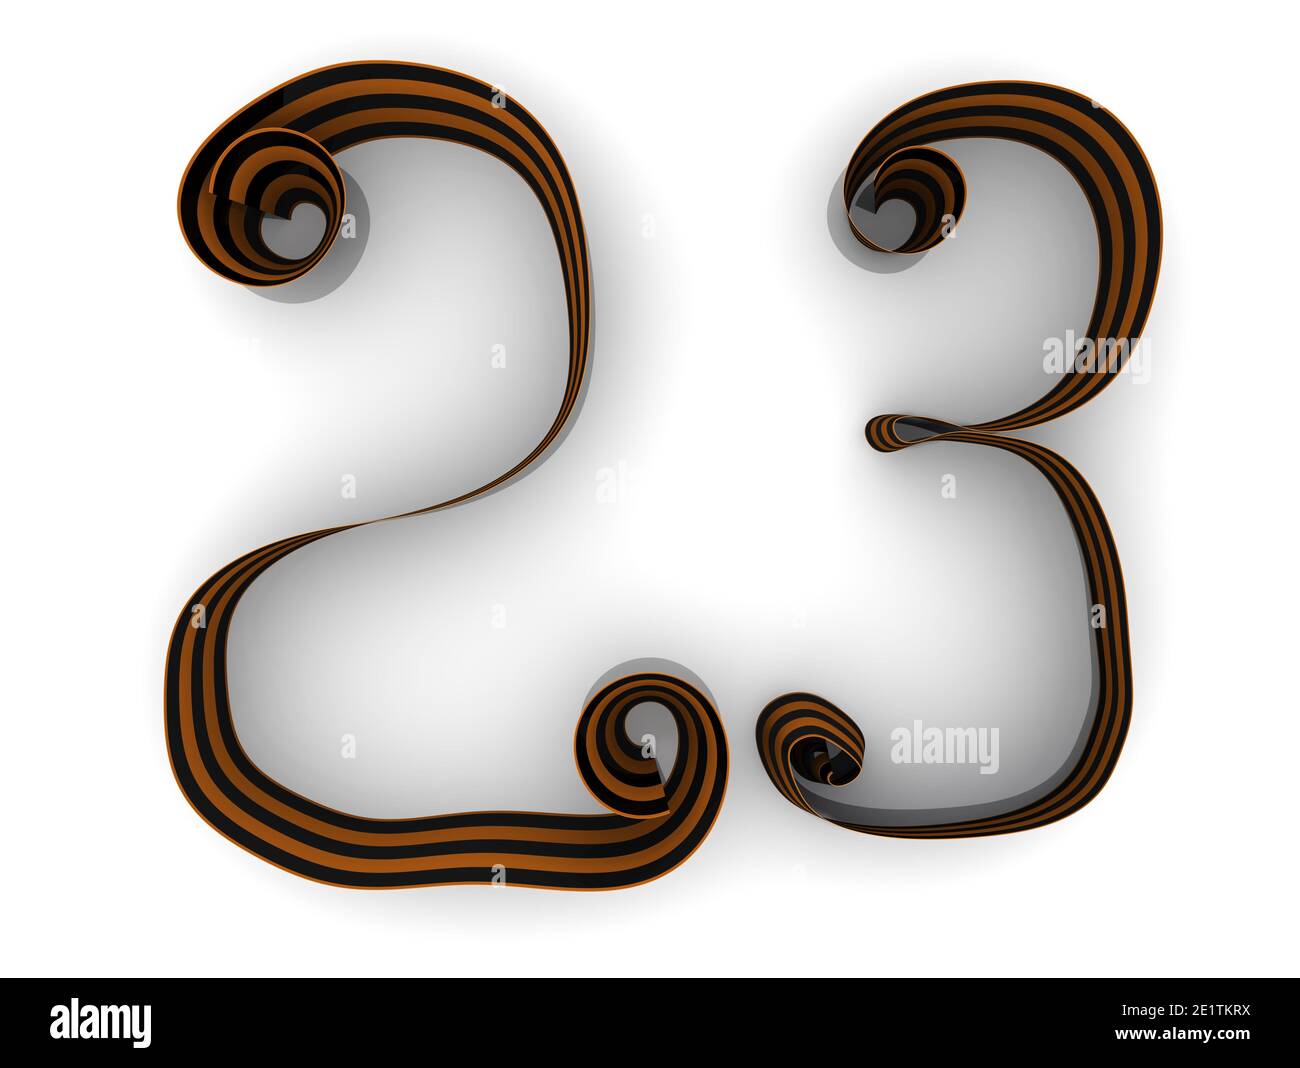 Ruban de Saint-George en forme de numéro 23 (23 février - défenseur de la fête de la Patrie) isolé sur fond blanc. Illustration 3D Banque D'Images